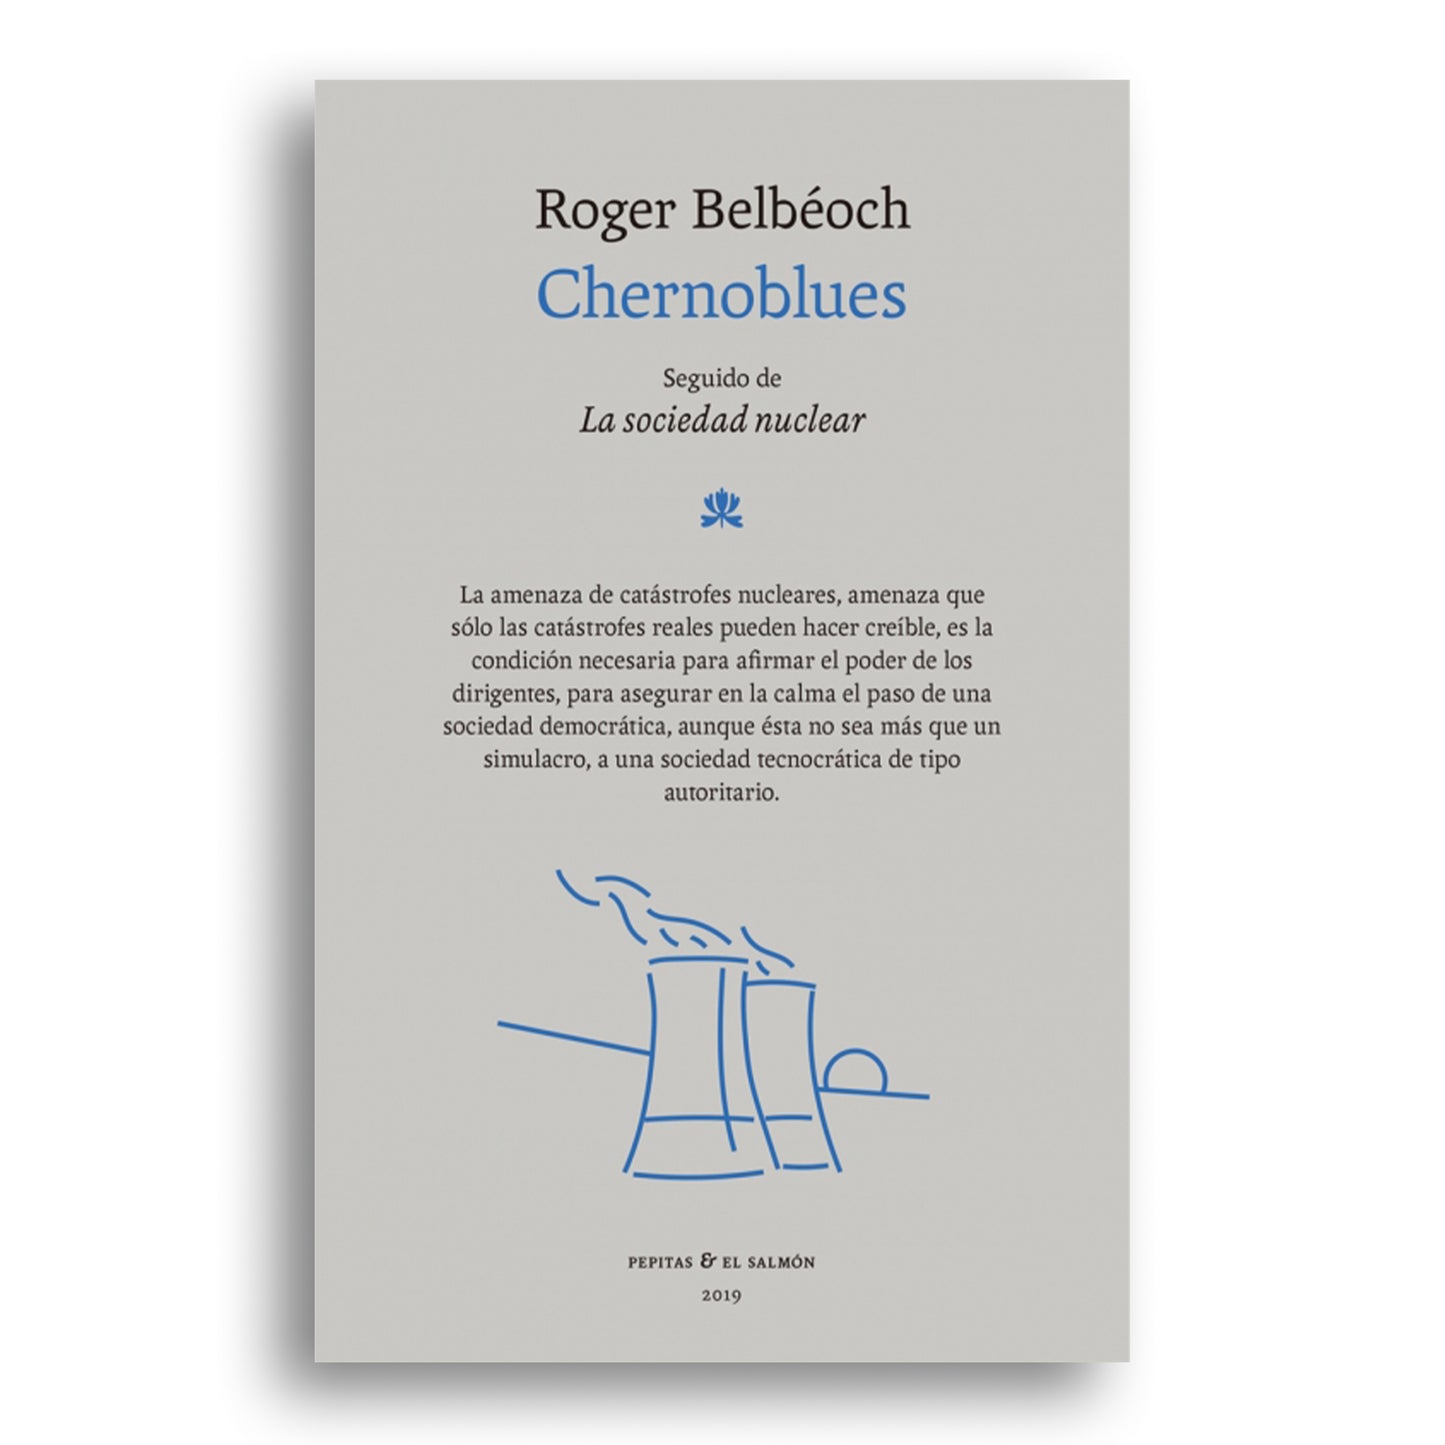 Chernoblues: seguido de la sociedad nuclear